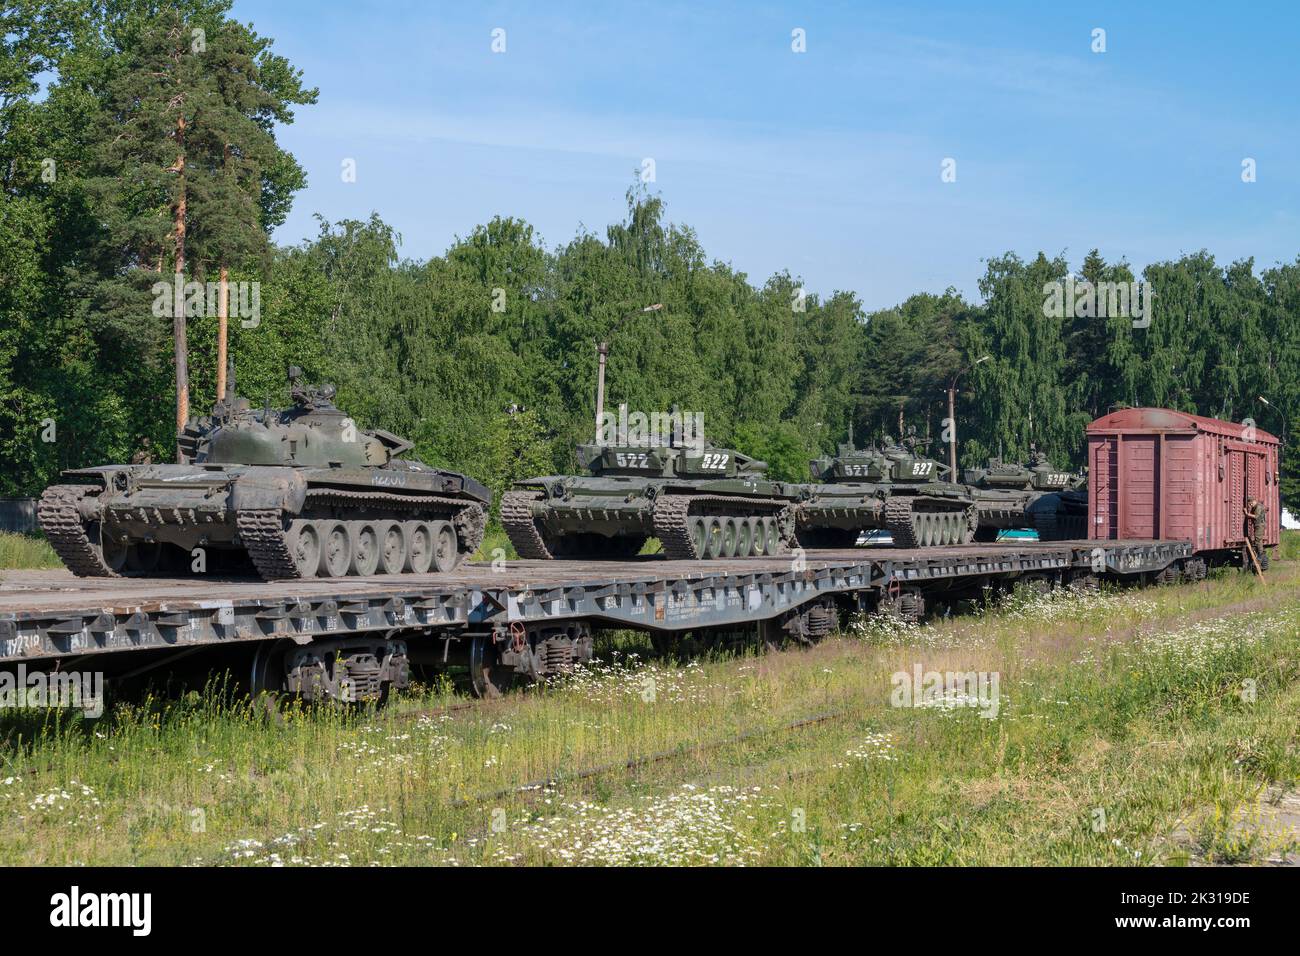 RÉGION DE LENINGRAD, RUSSIE - 02 JUILLET 2020 : un train militaire avec des chars T-72B3 s'arrête lors d'une journée ensoleillée d'été Banque D'Images